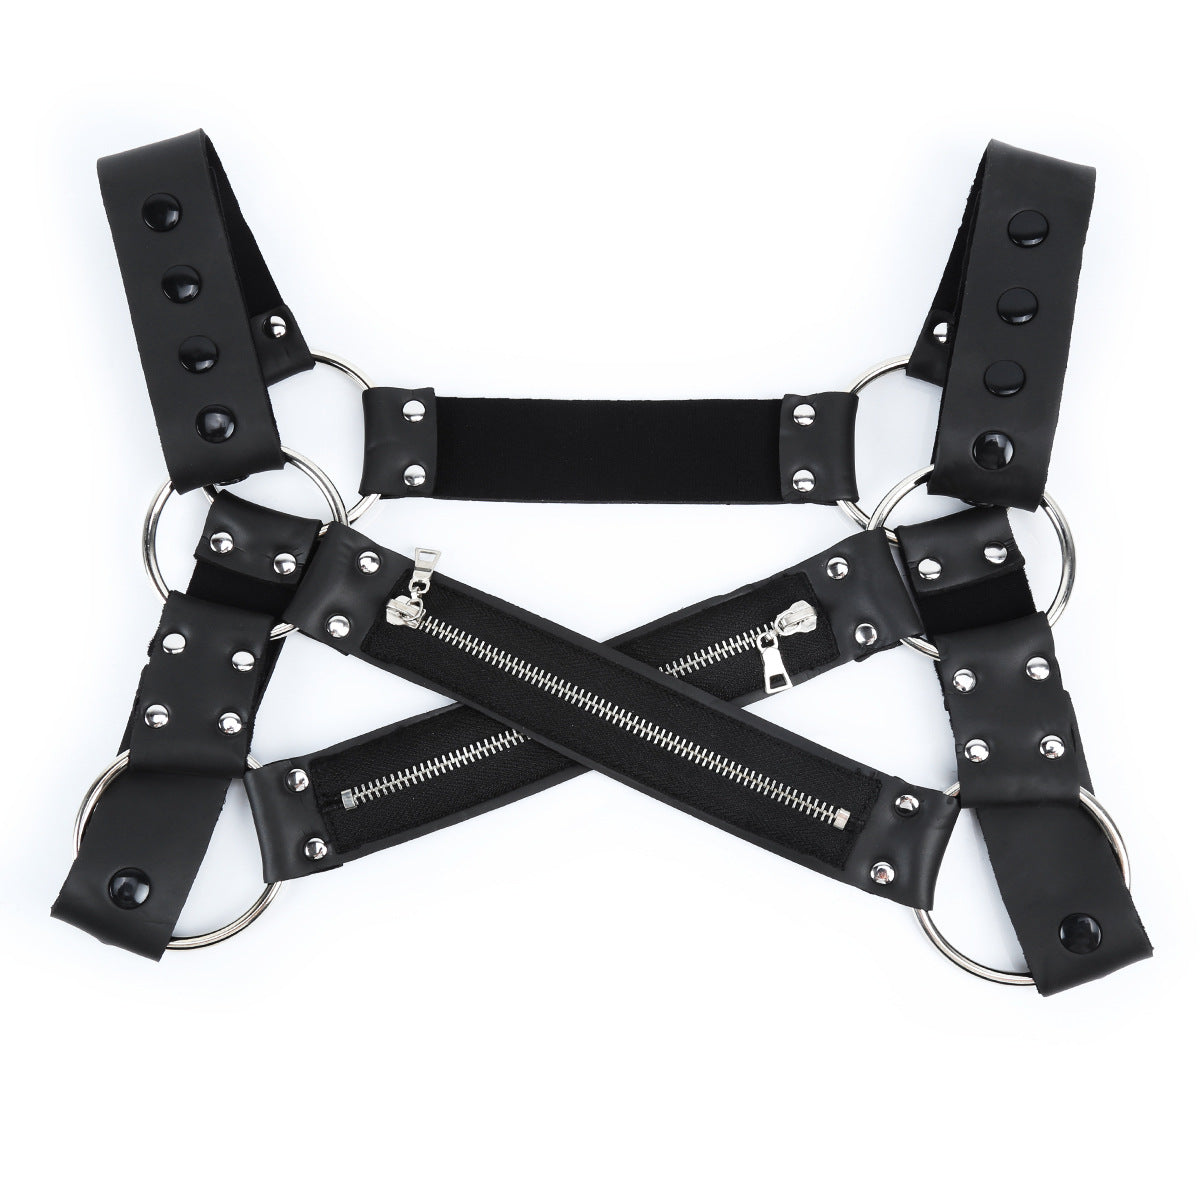 Adult products men's leather bondage clothing